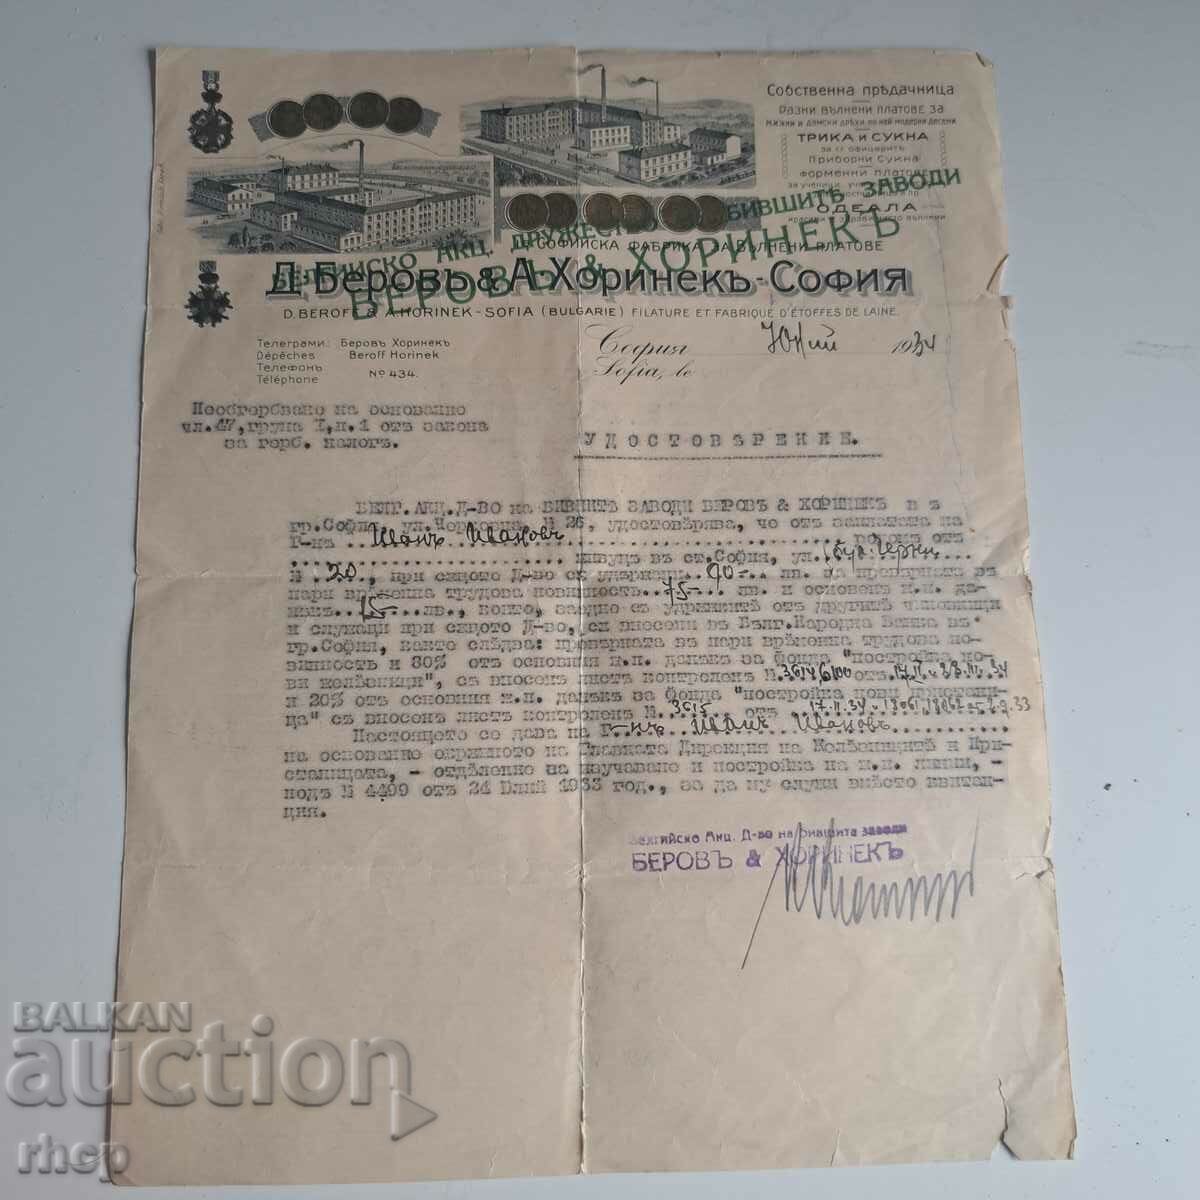 Беров и Хоринек София 1934 фабрика бланка документ